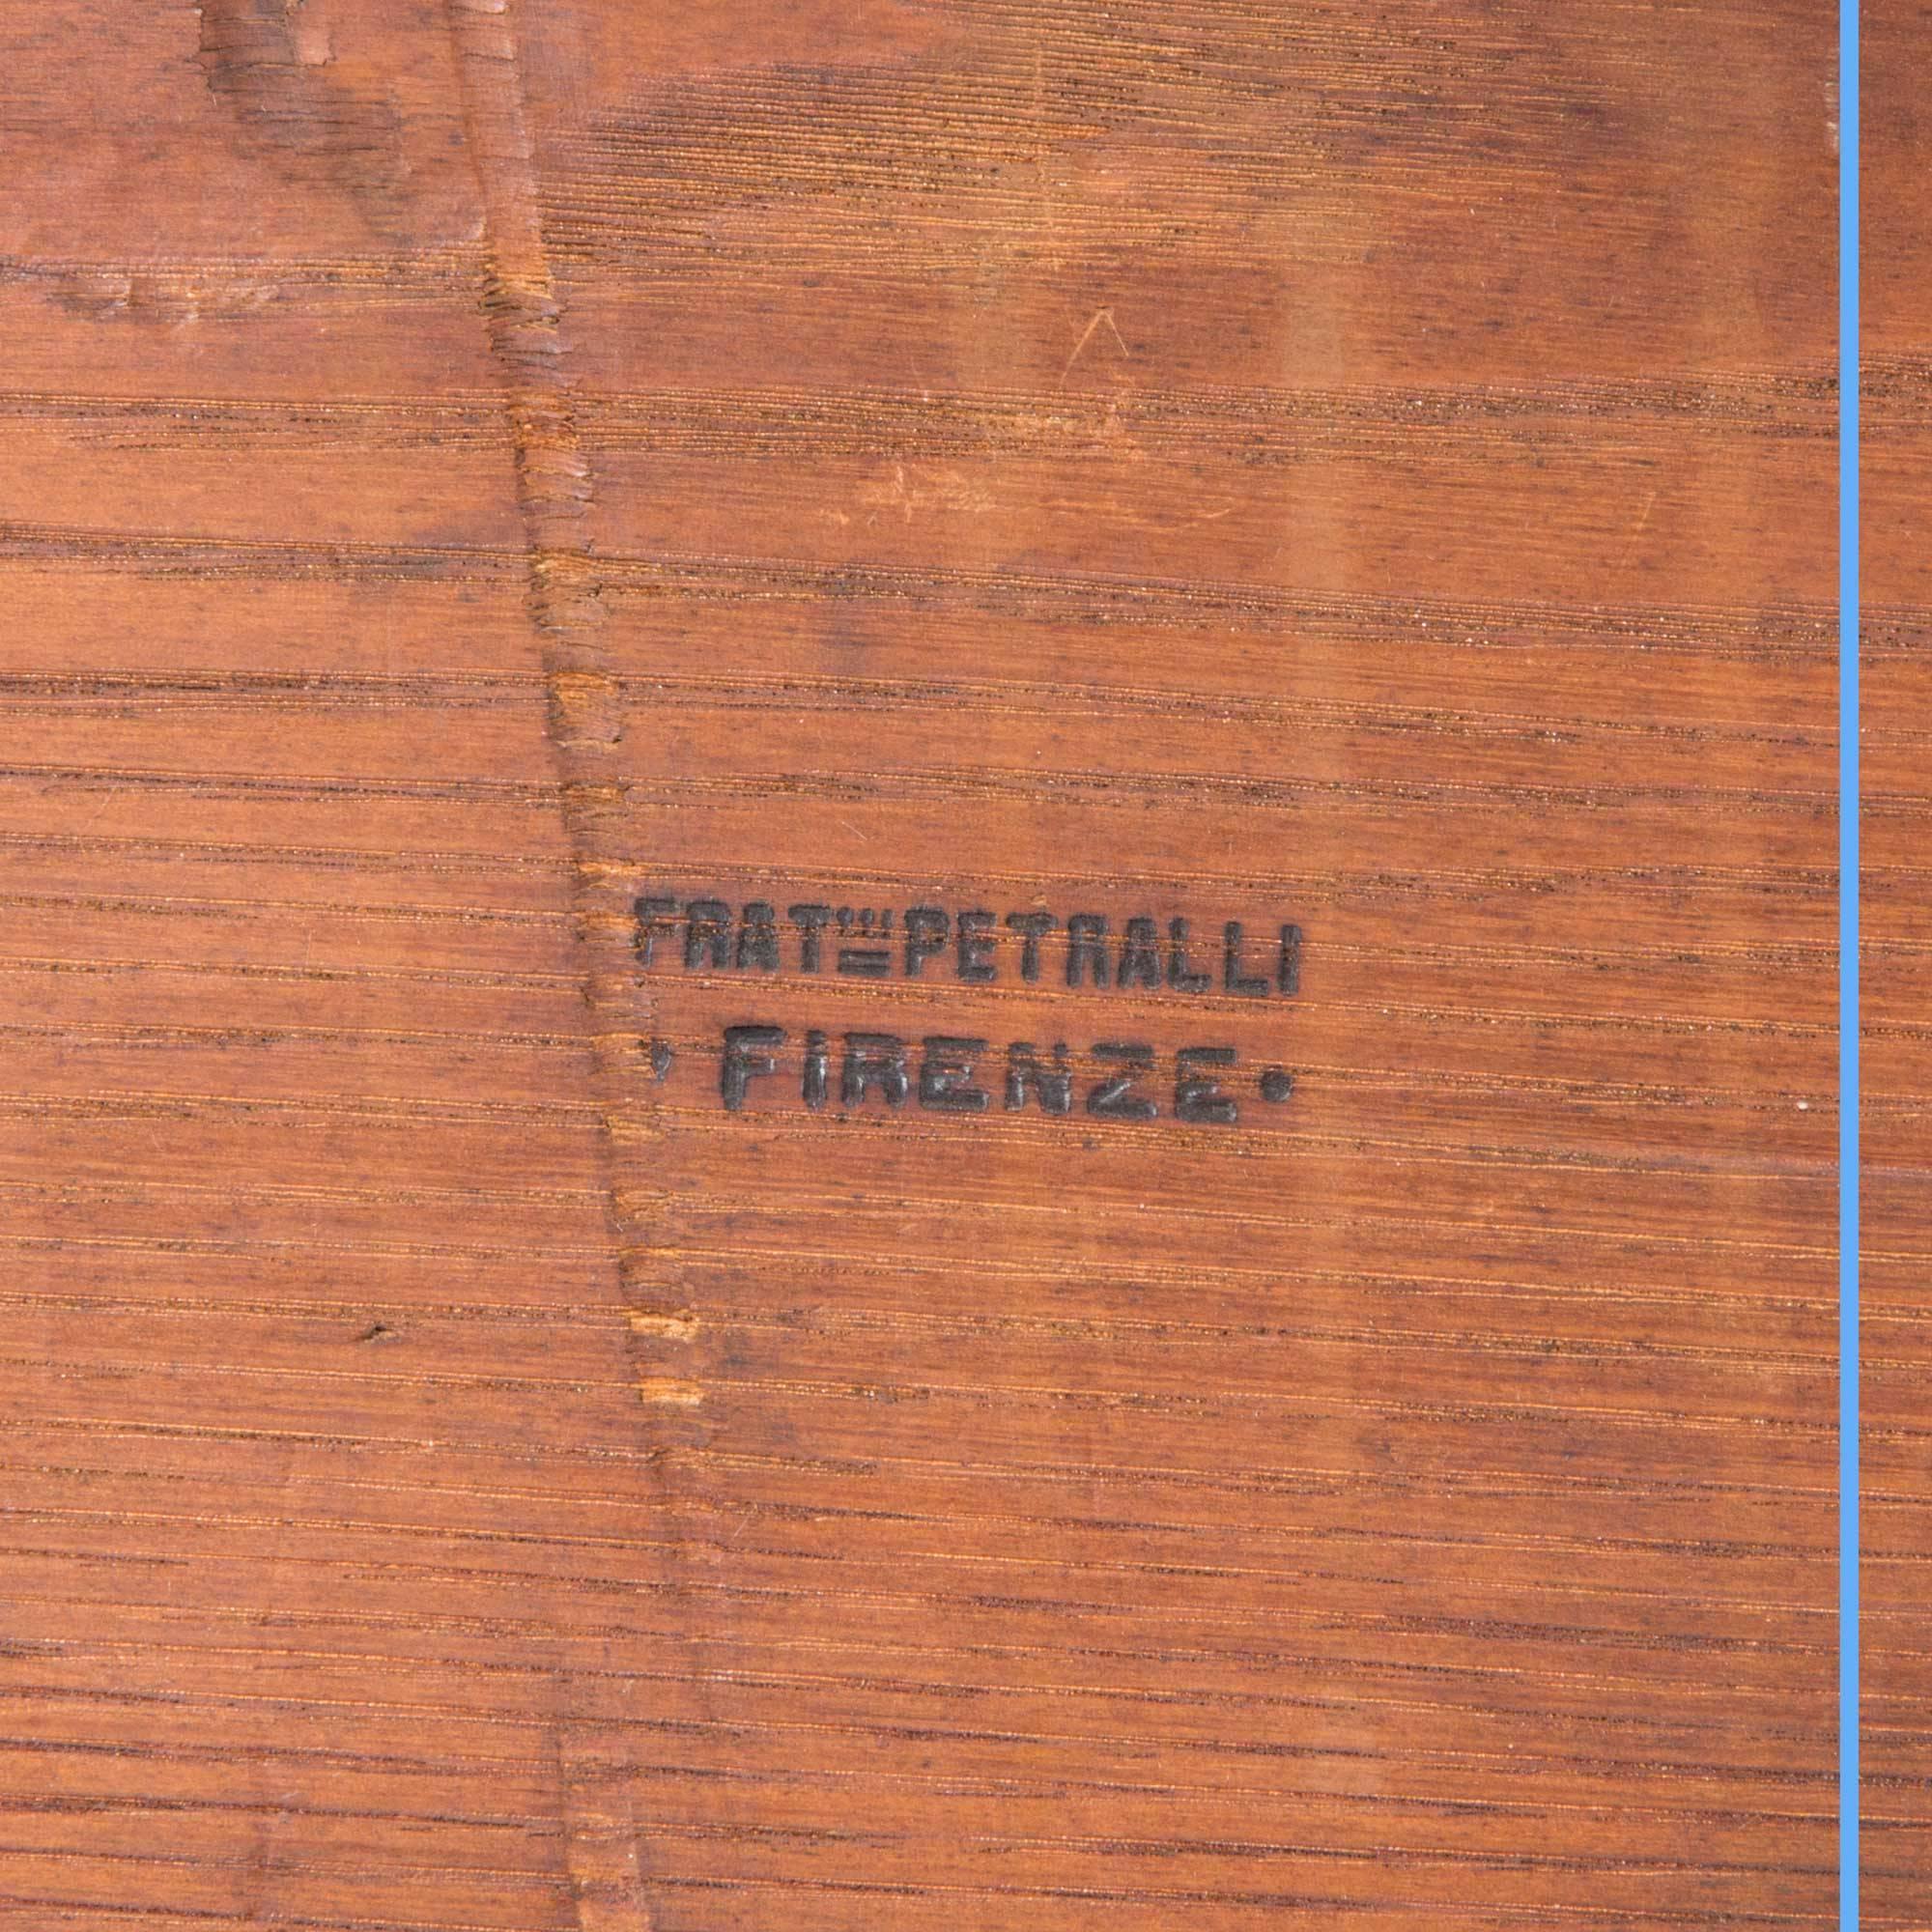 Ernesto Petralli and Fratello Writing Desk-Bookcase, XIXth For Sale 2